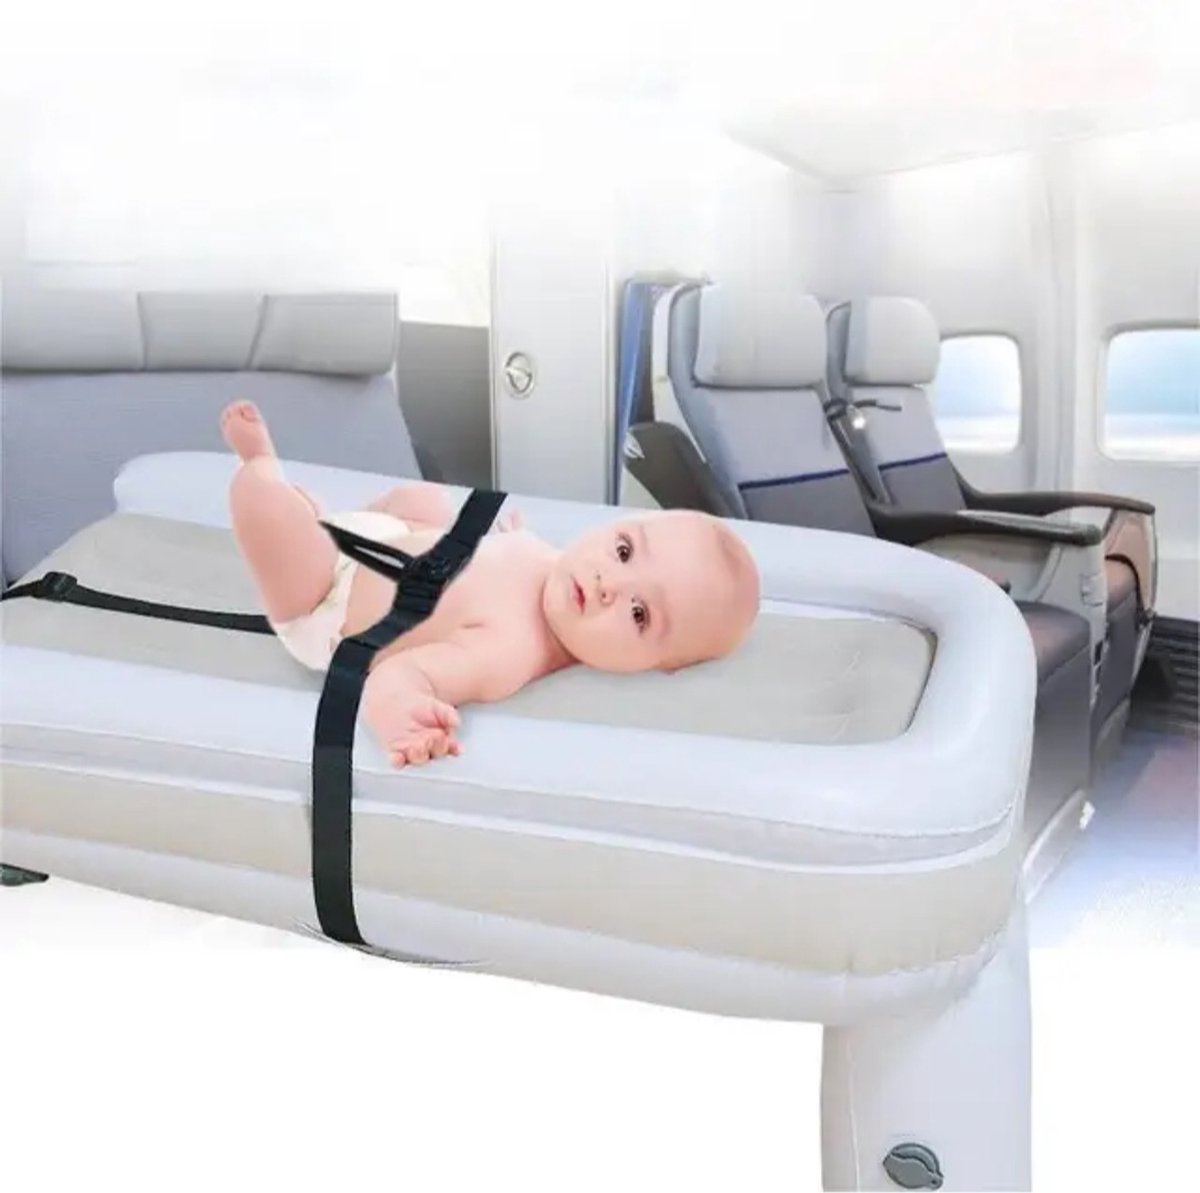 Lit avion - Lit Bébé avion - Lit enfant avion - Lit de voyage Bébé